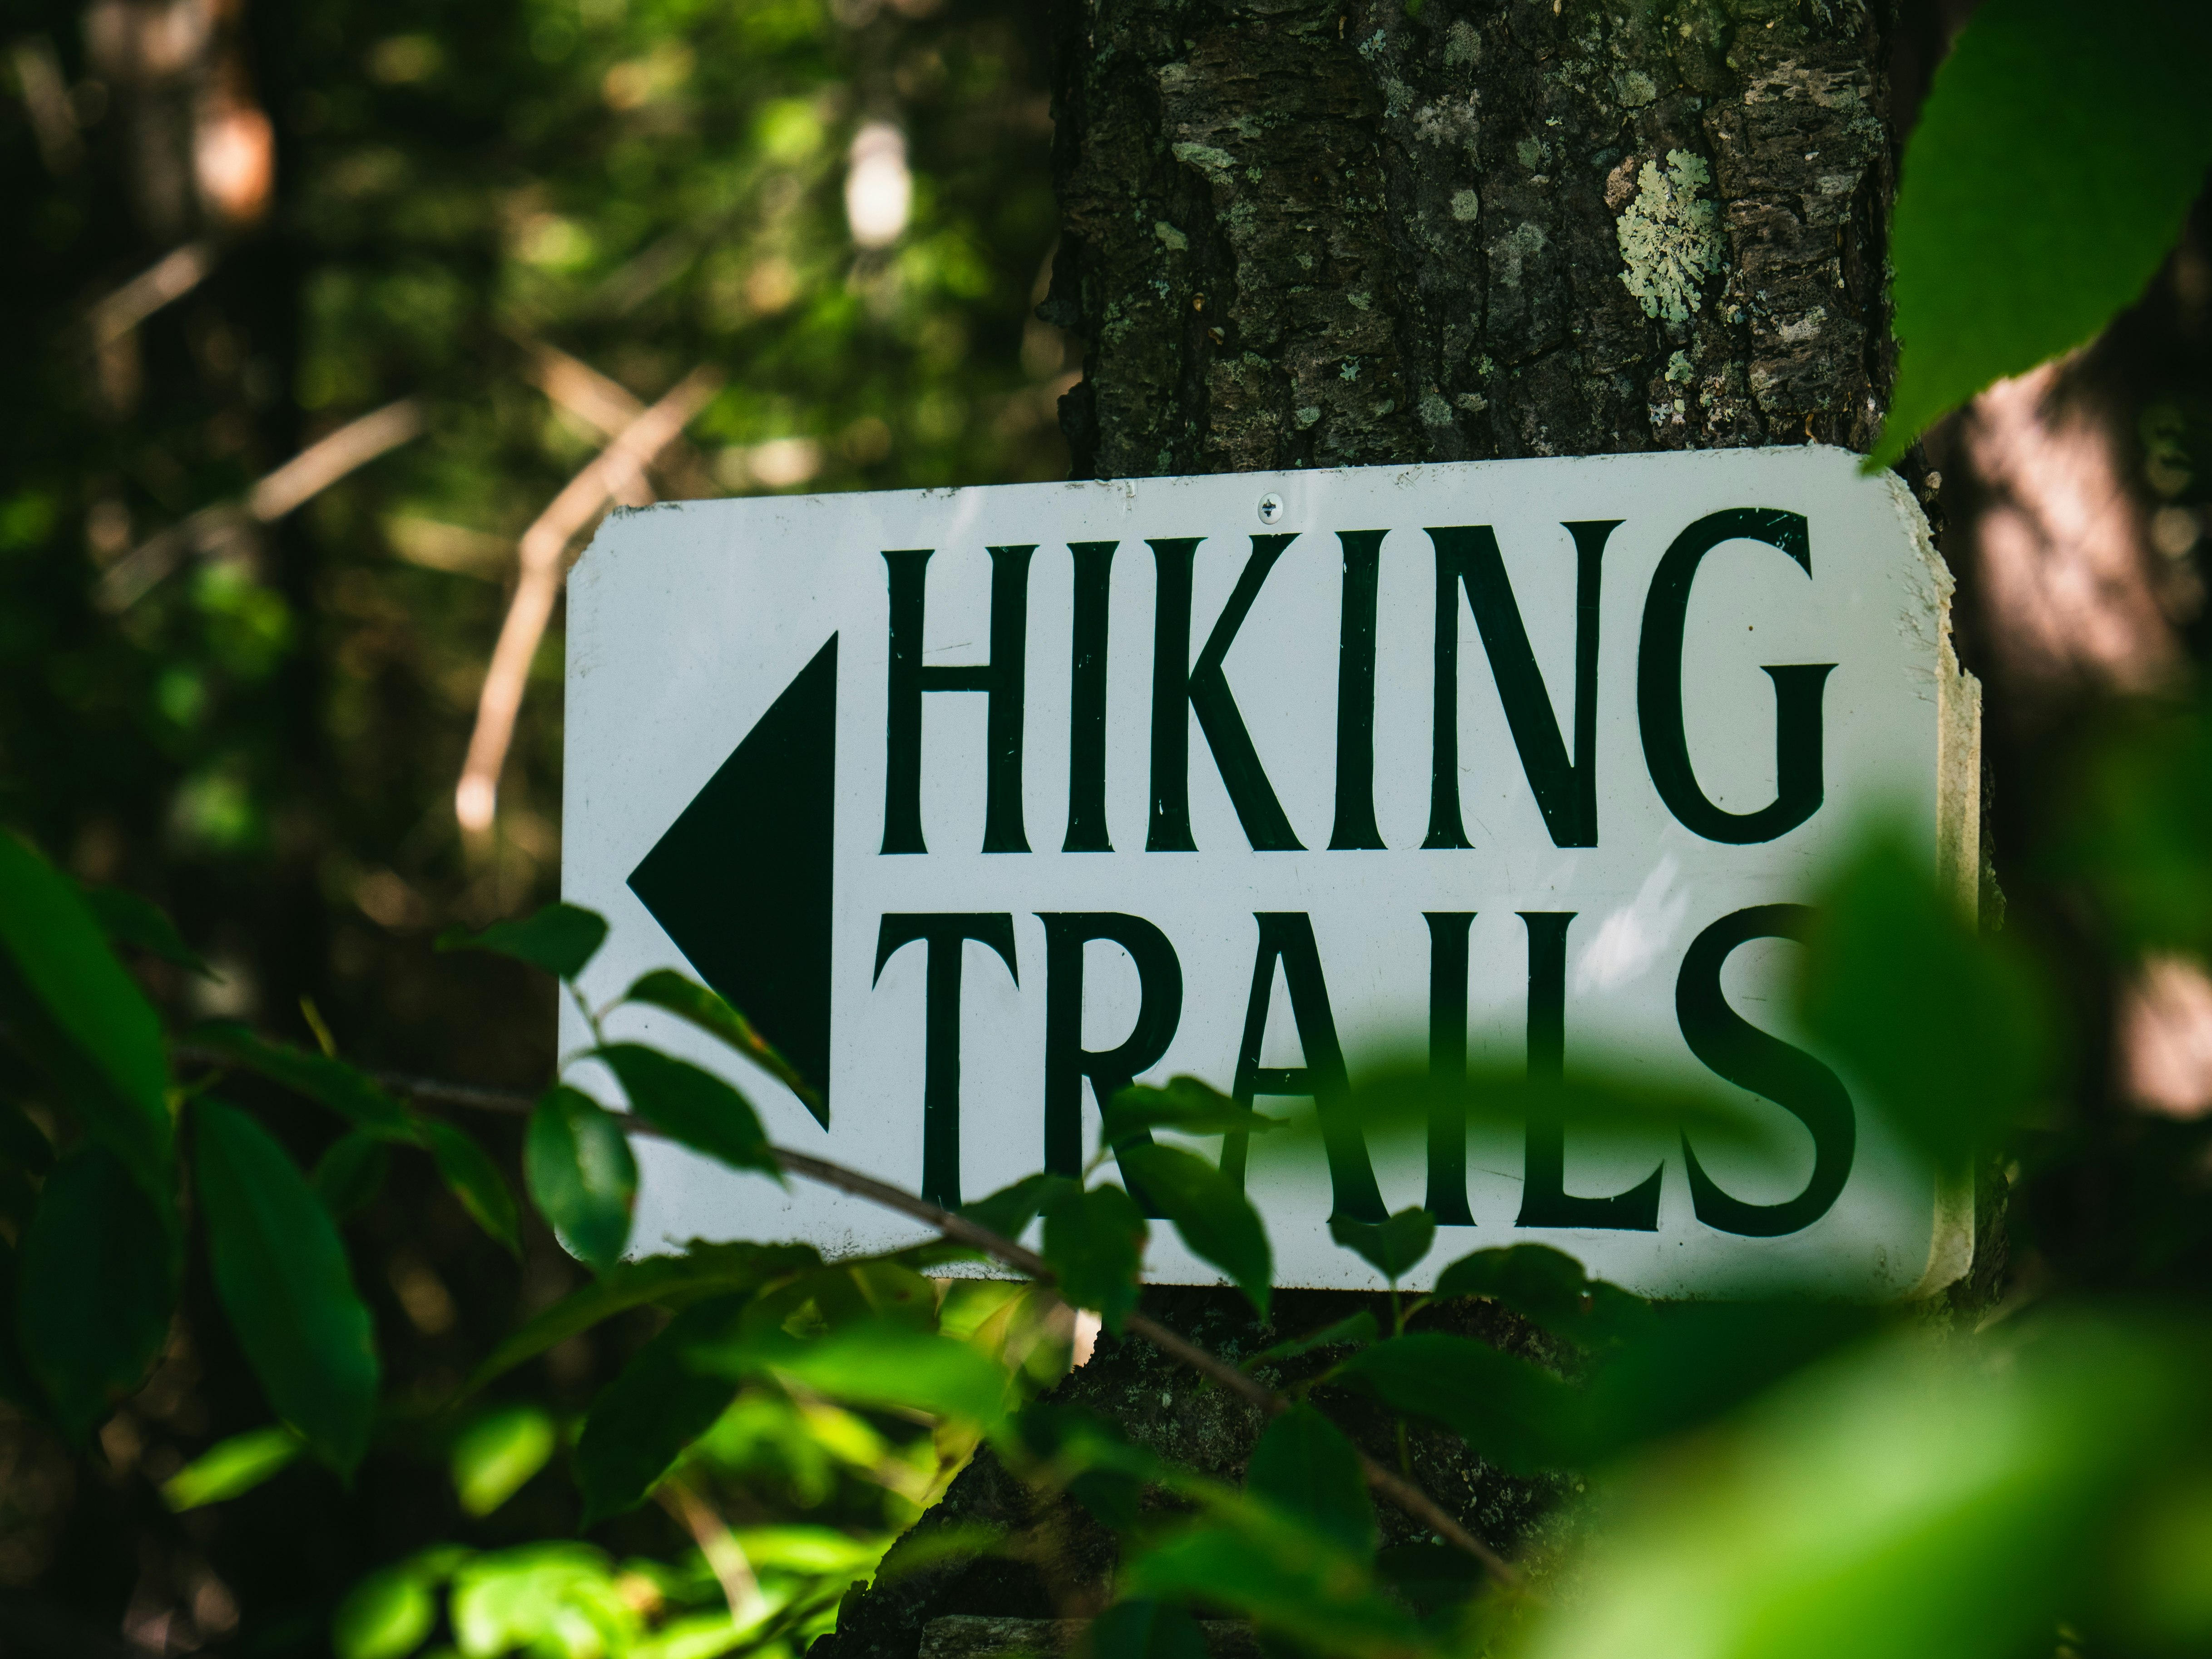 Hiking Trails signage